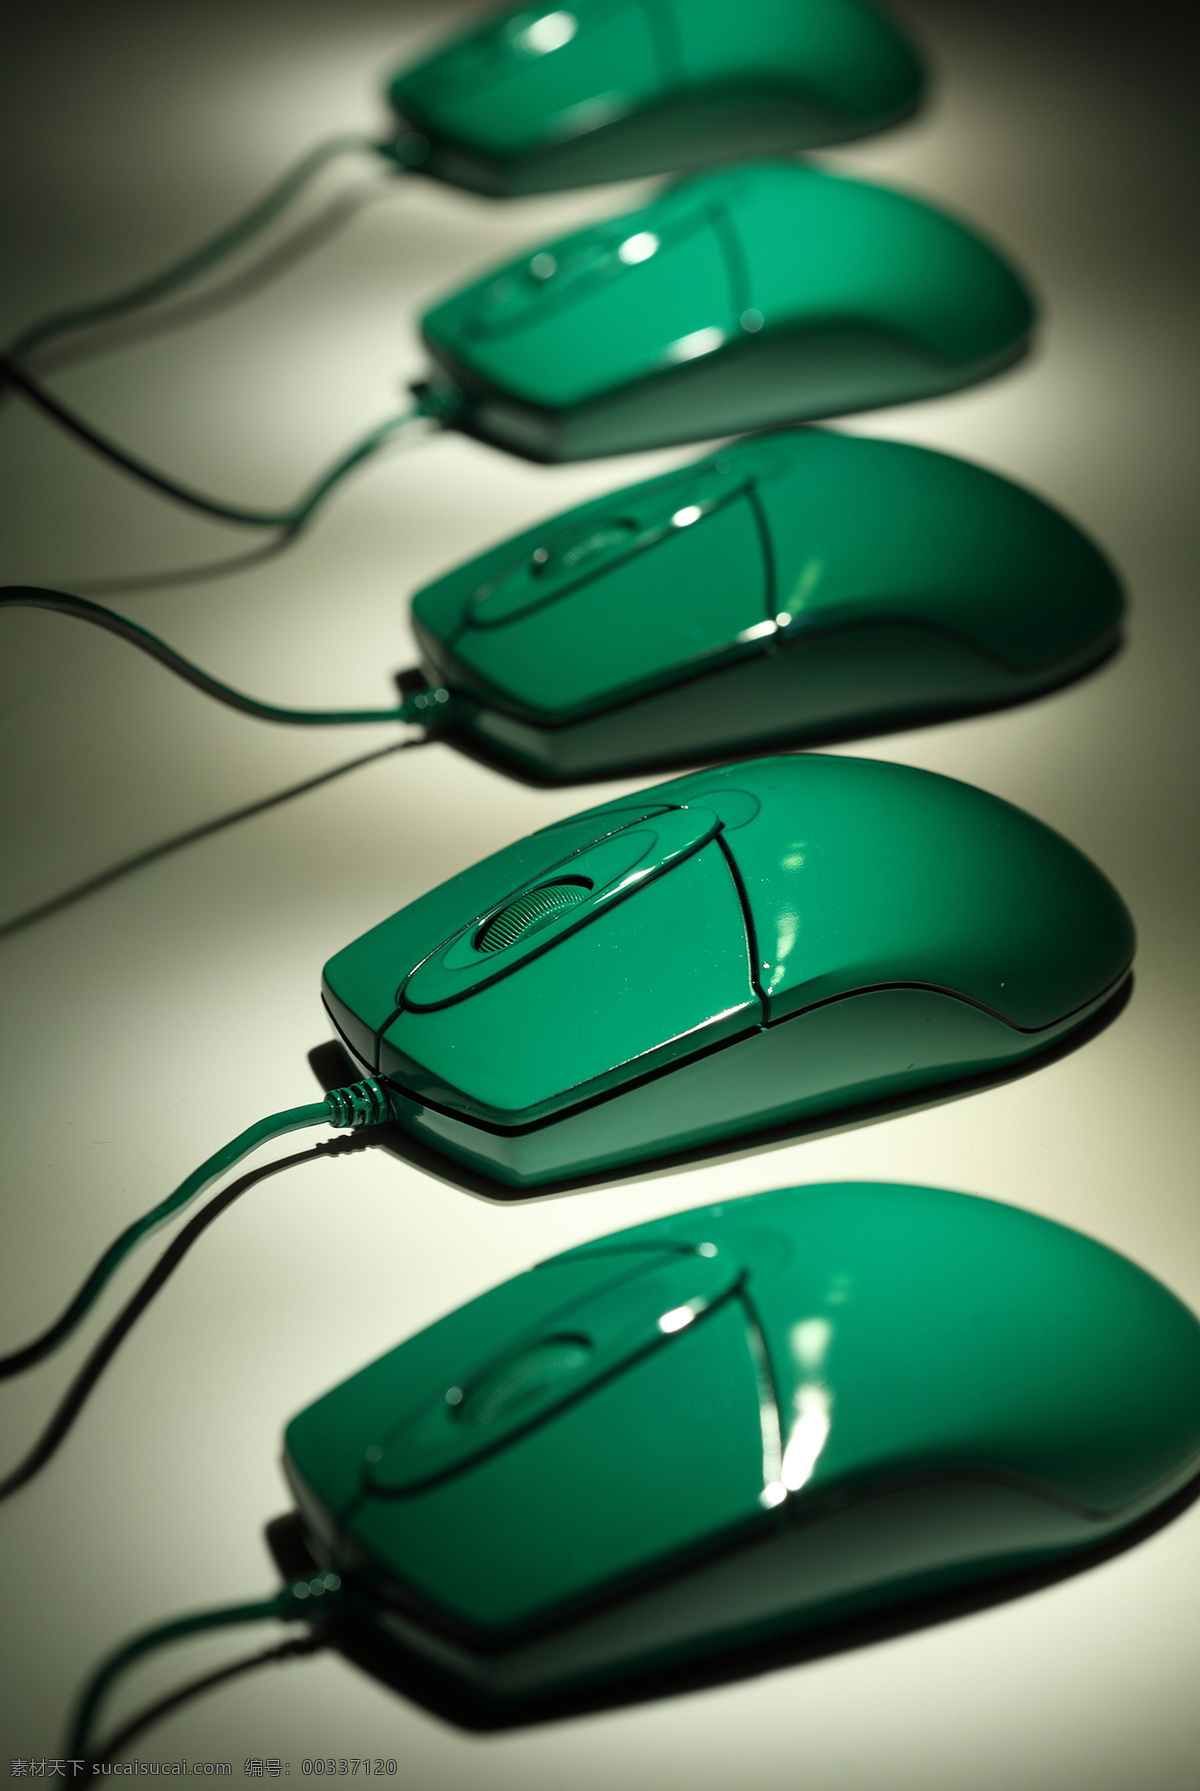 一排绿色鼠标 鼠标 电脑数码 通讯产品 电子产品 科技数码 电器产品 计算机 其他类别 现代科技 黑色